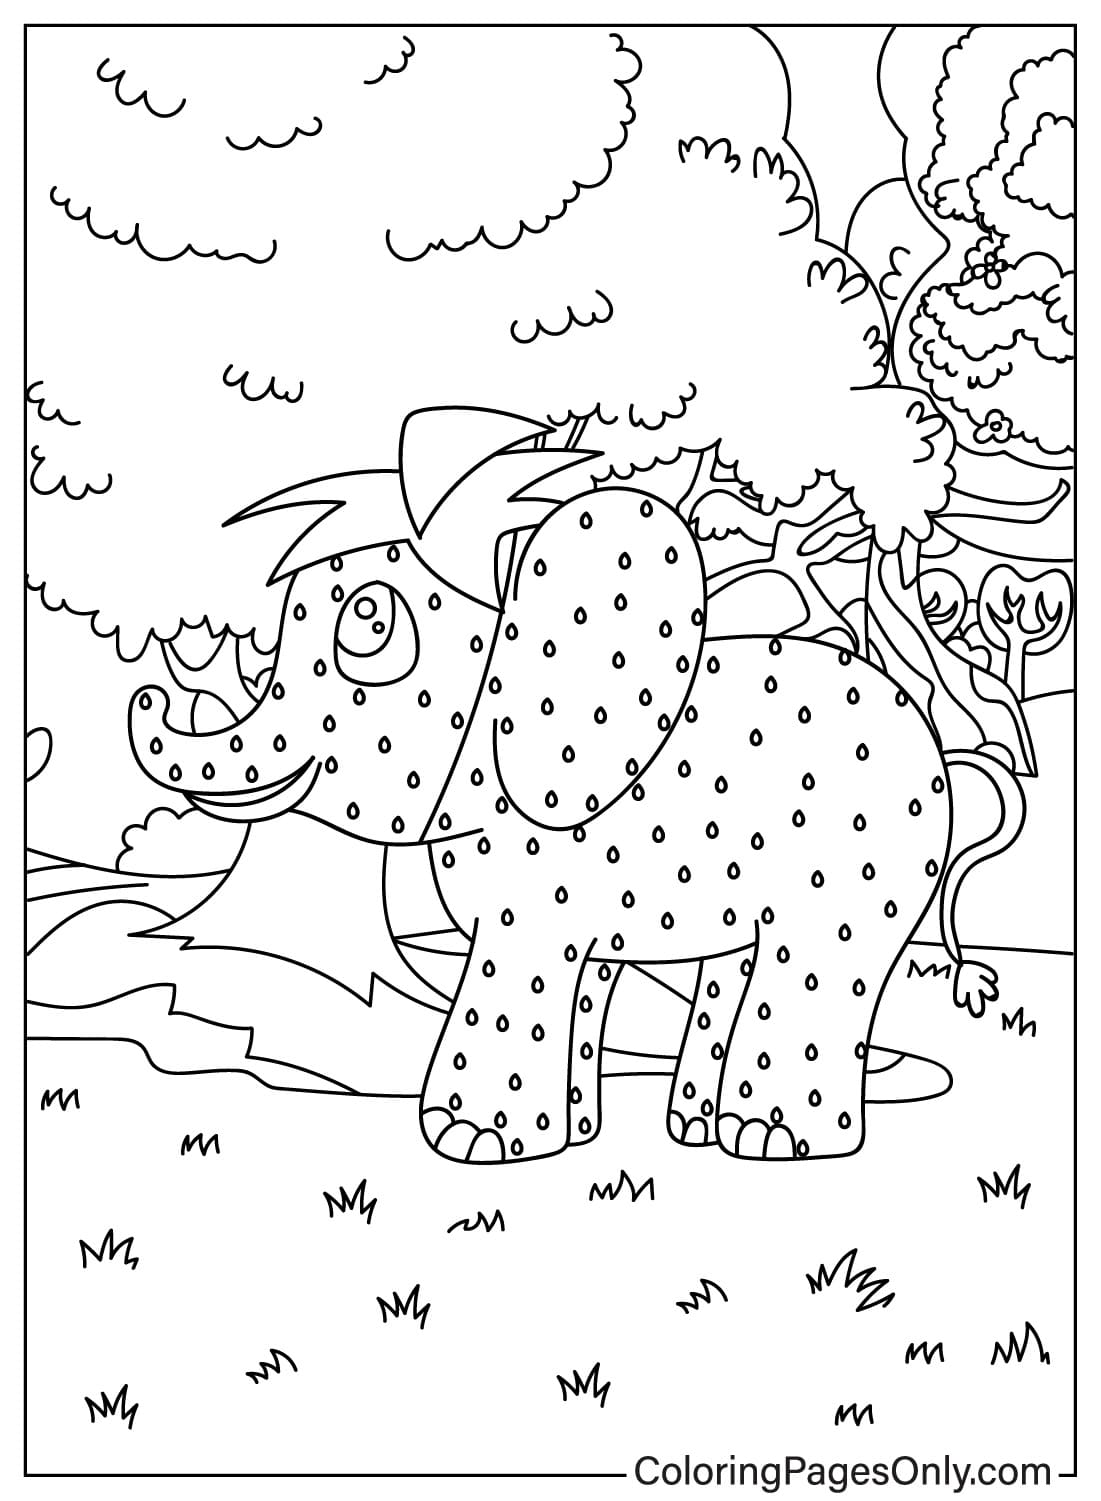 Página para colorear de Meme Elefante de Fresa de Elefante de Fresa